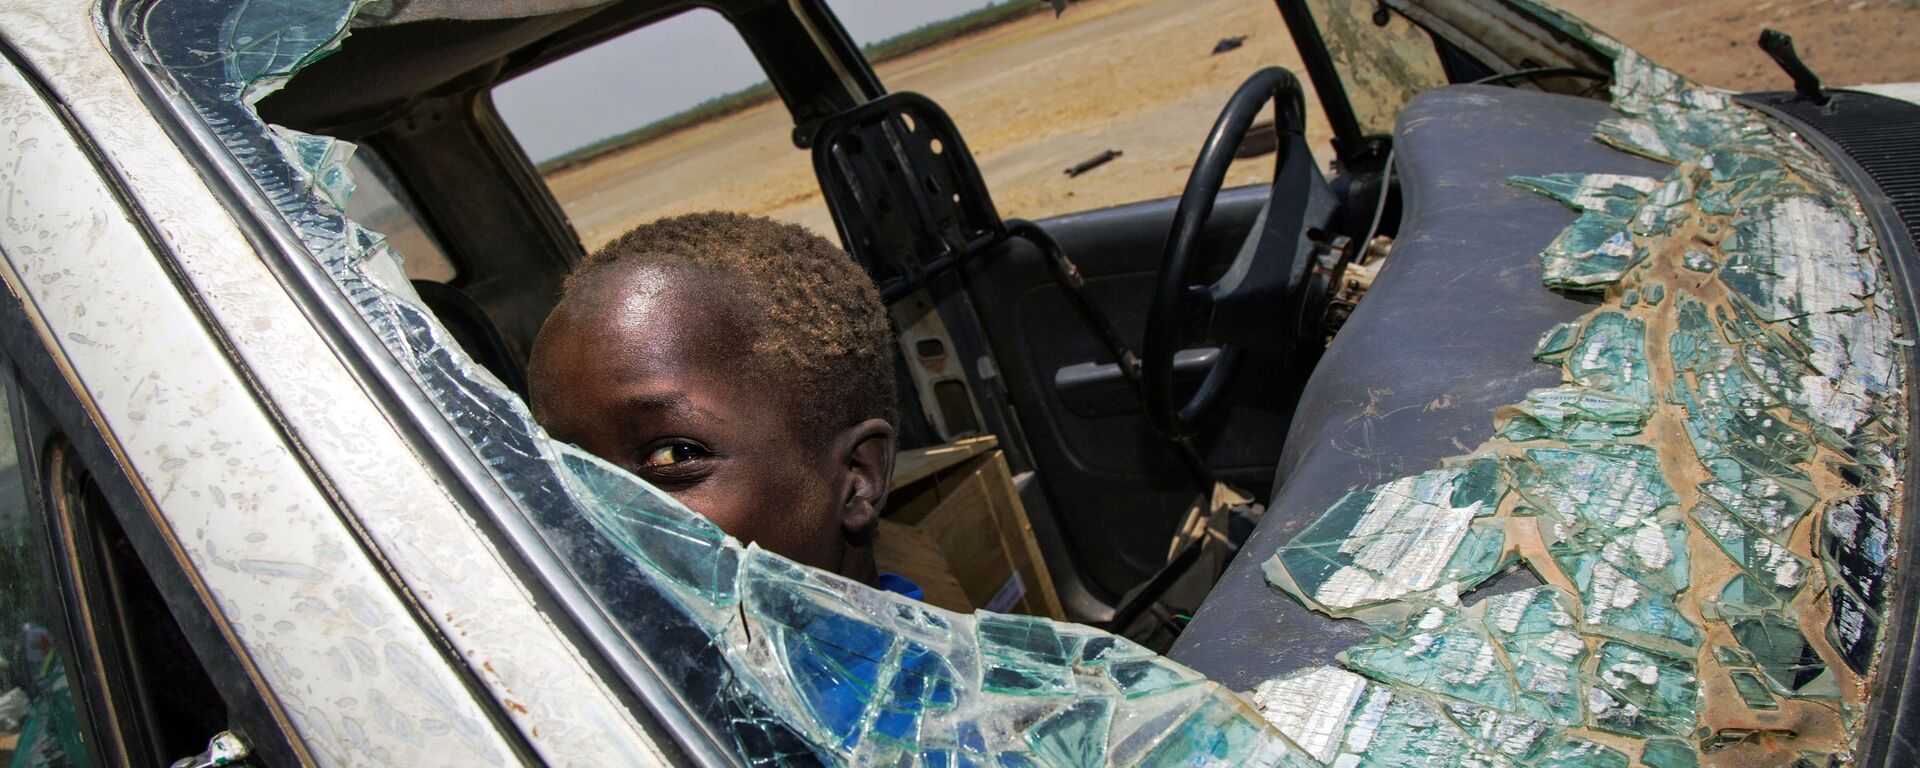 طفل داخل سيارة محطمة نتيجة اشتباكات دارت القوات المسلحة في جنوب السودان، 11 أبريل/ نيسان 2017 - سبوتنيك عربي, 1920, 11.01.2023